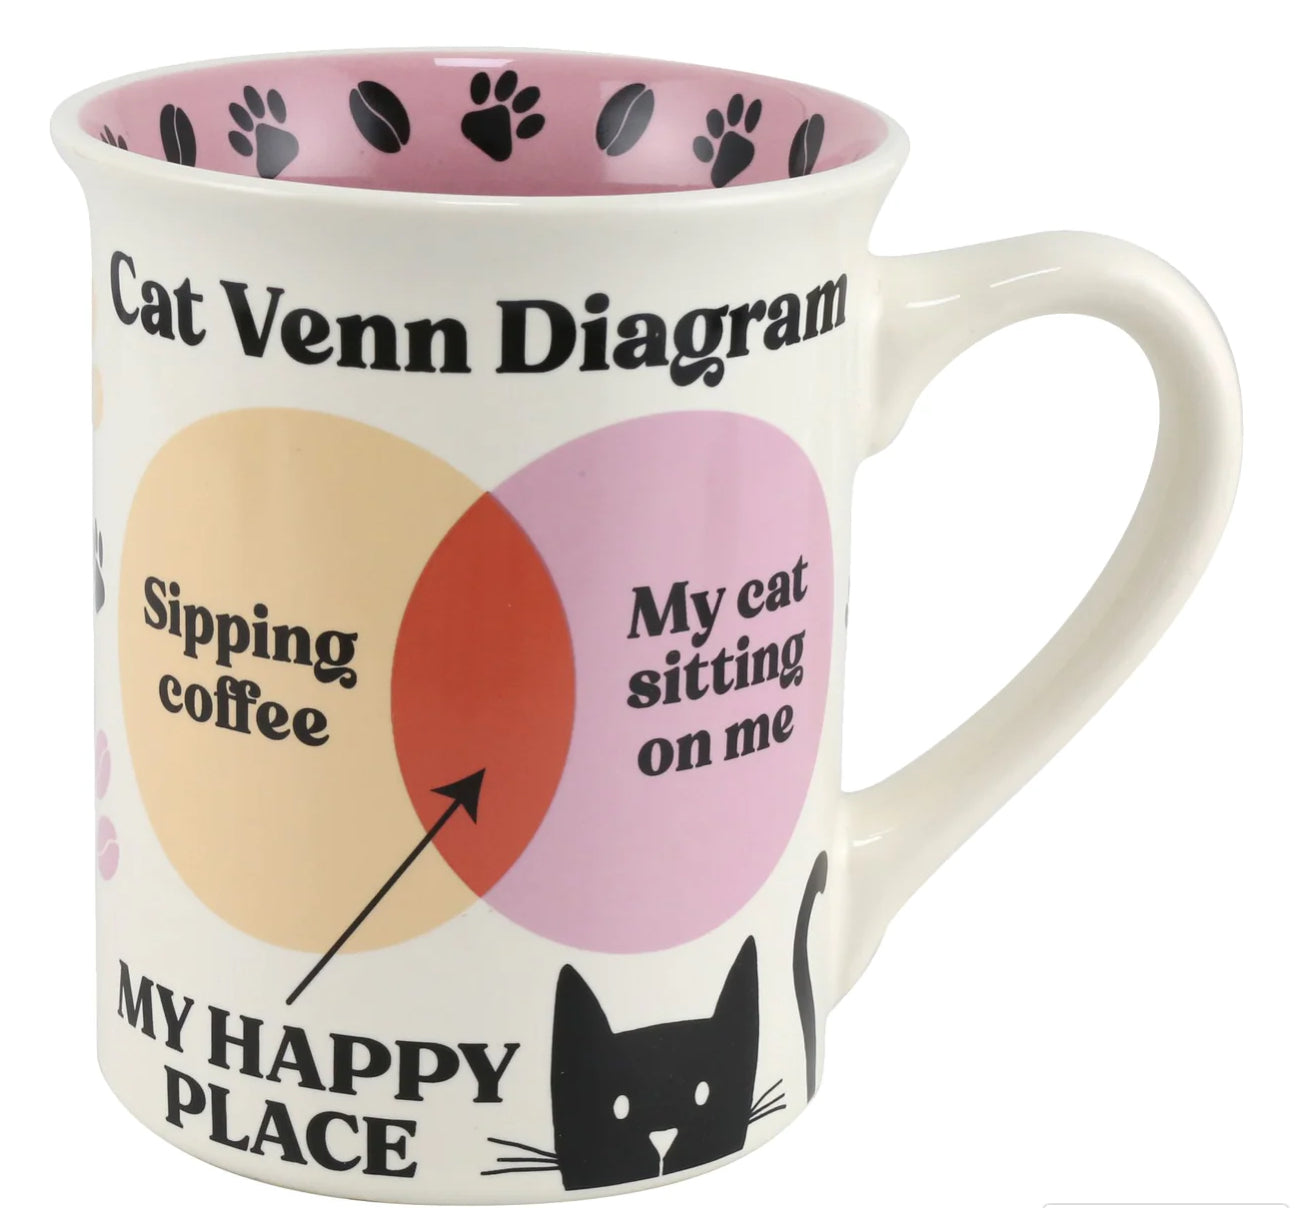 Cat Venn Diagram Mug